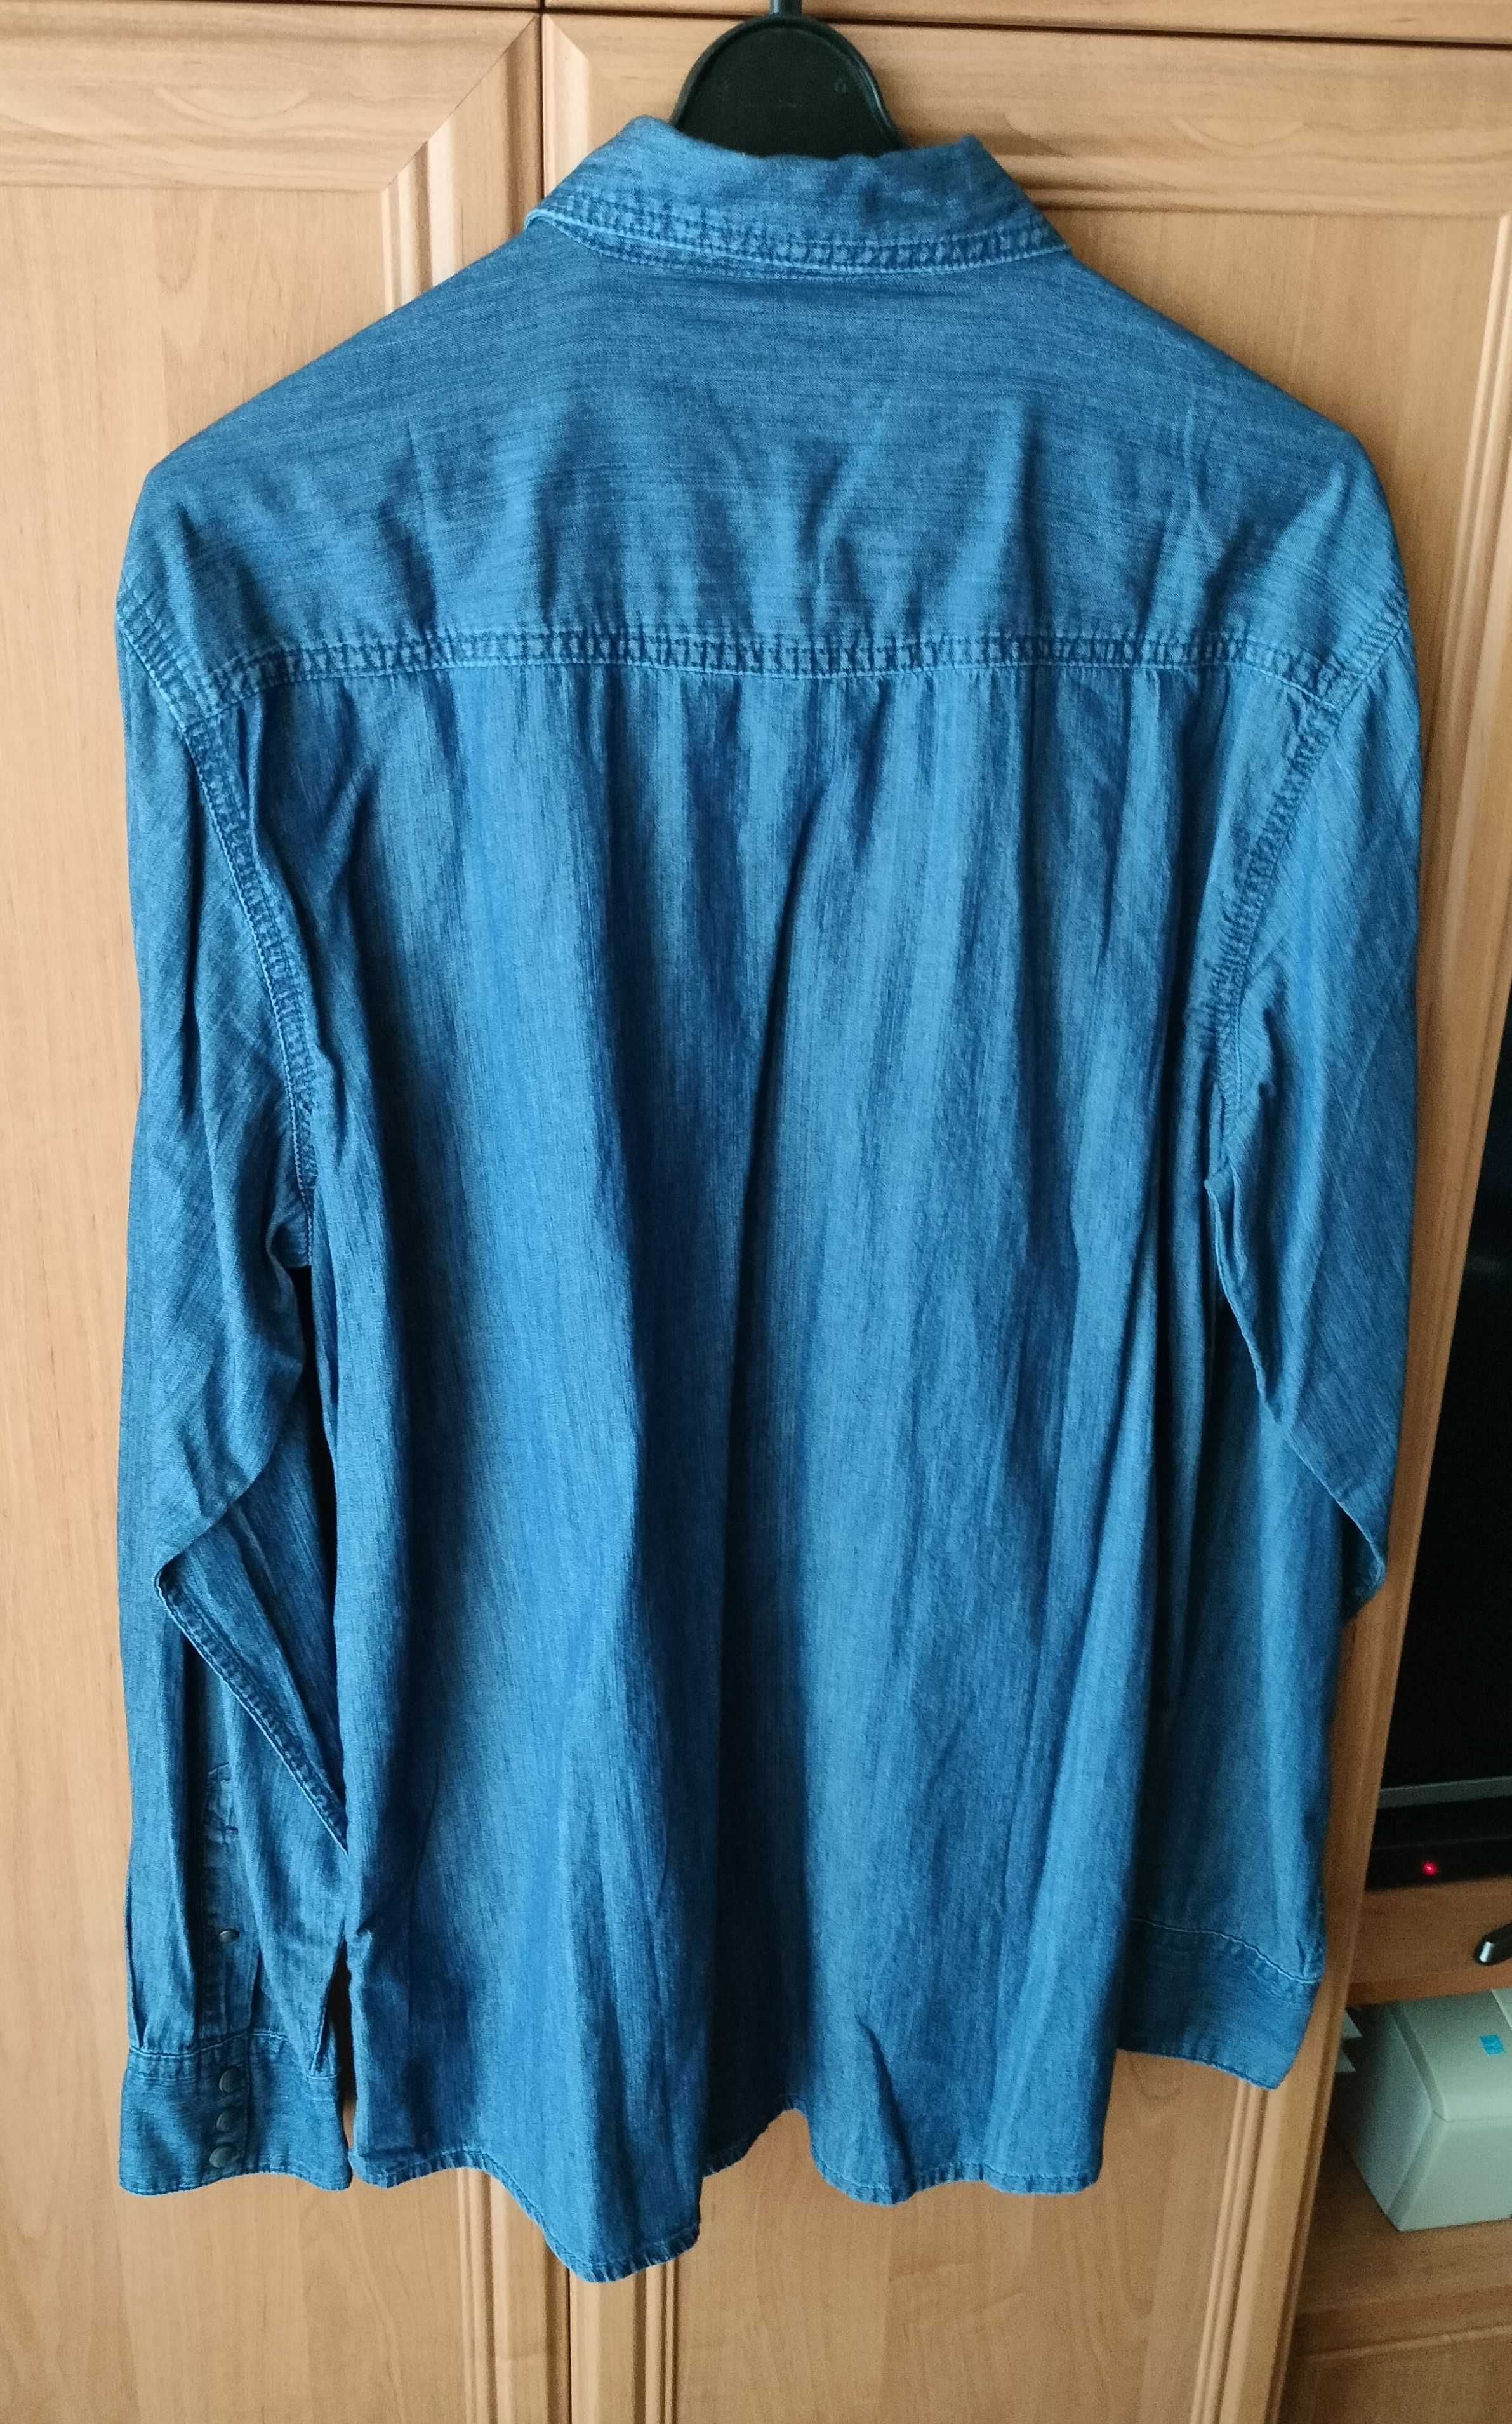 Koszula Sportowa Jeans LIVERGY z długim rękawem rozmiar L ! Nowa !